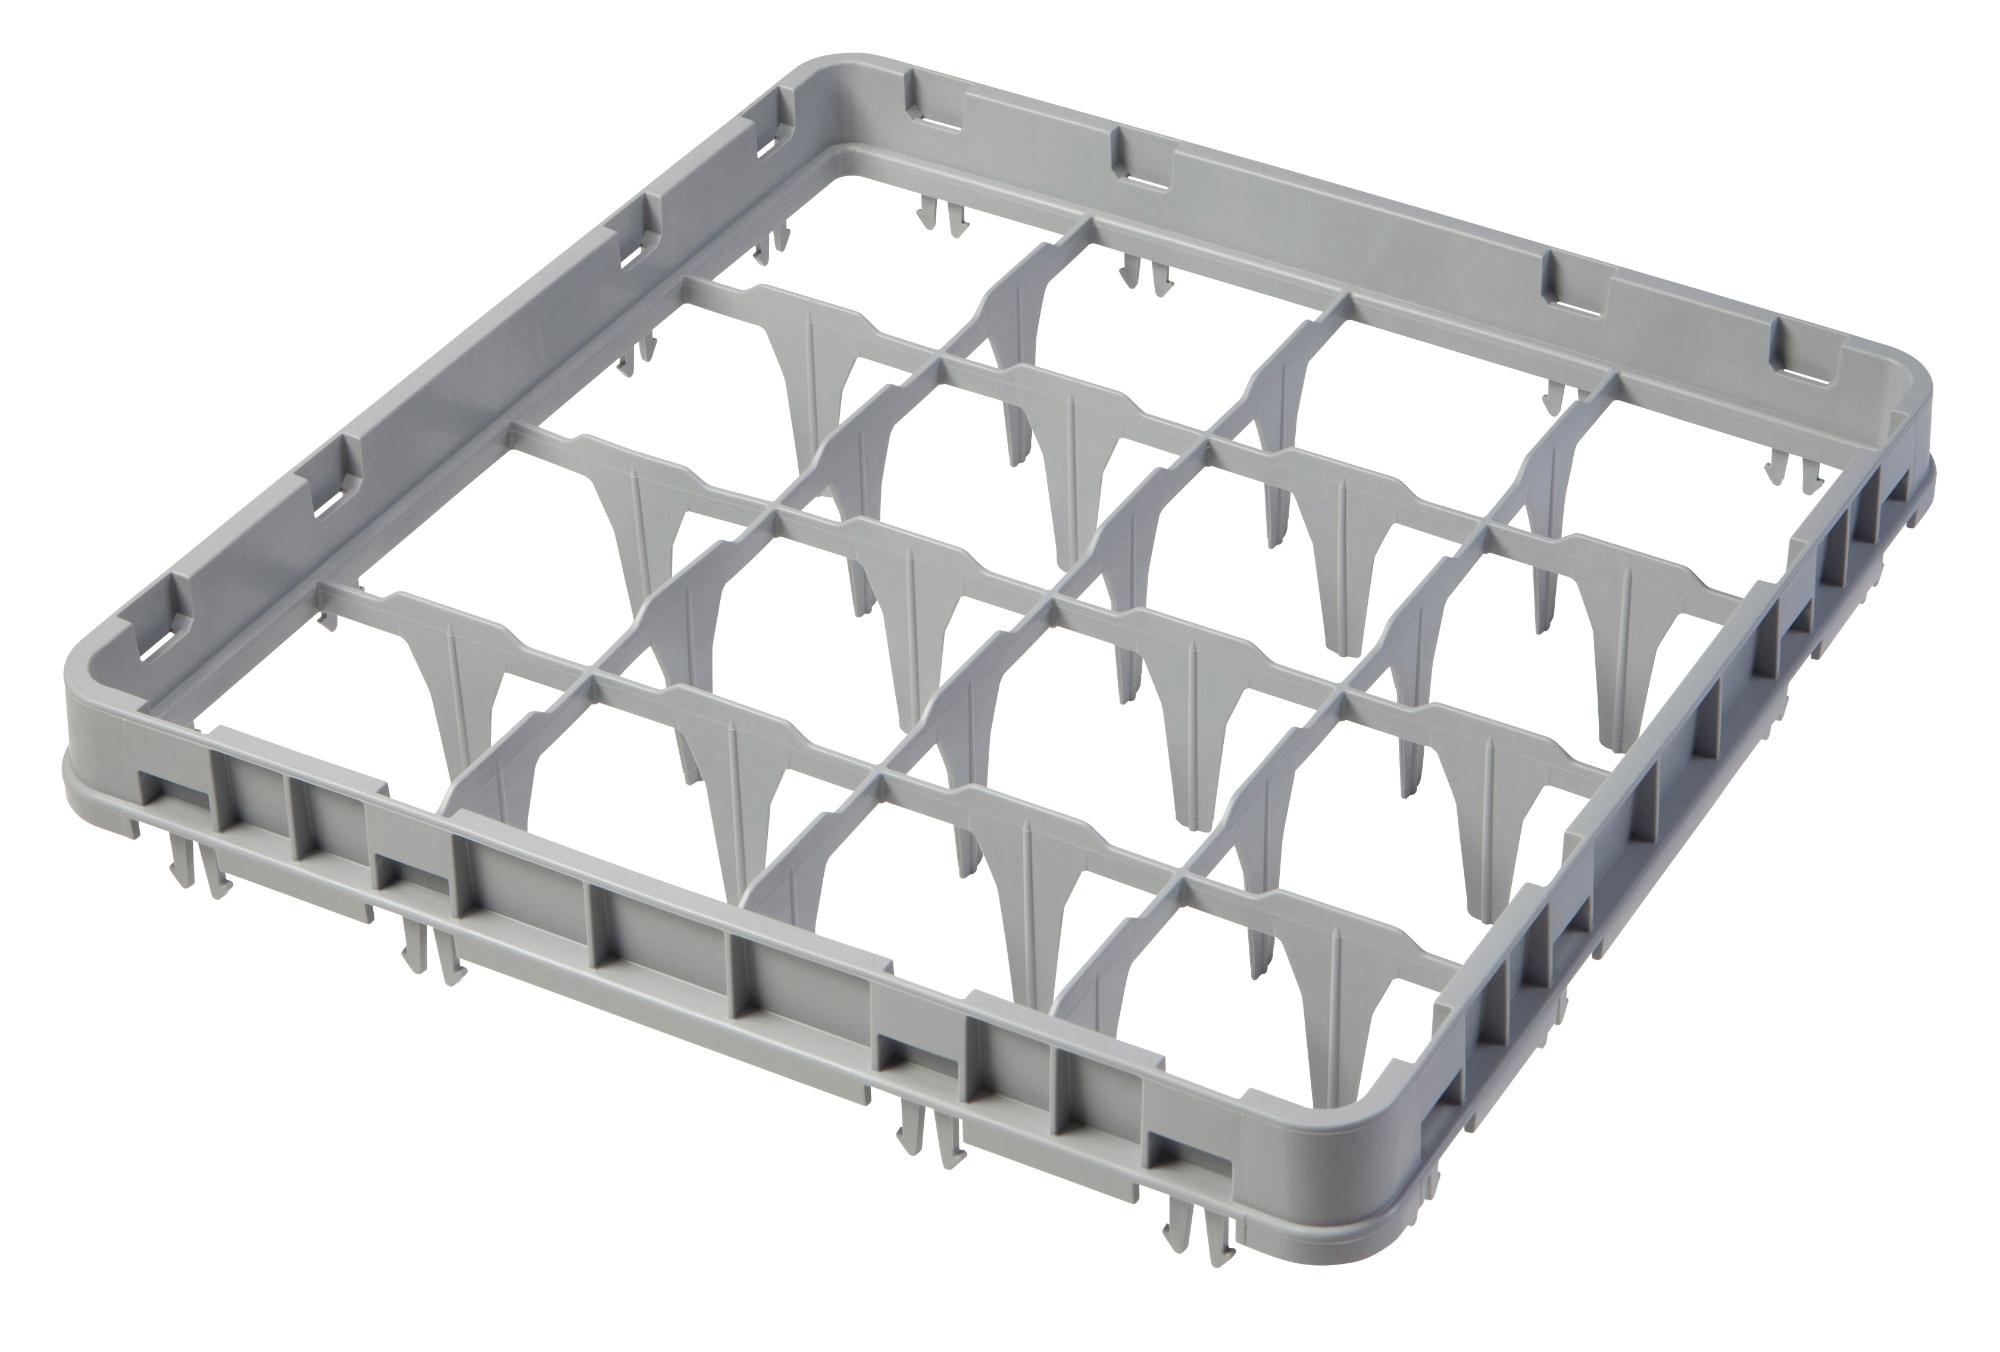 Full drop rack extender 500×500 mm grey, E1 model, 16 compartment